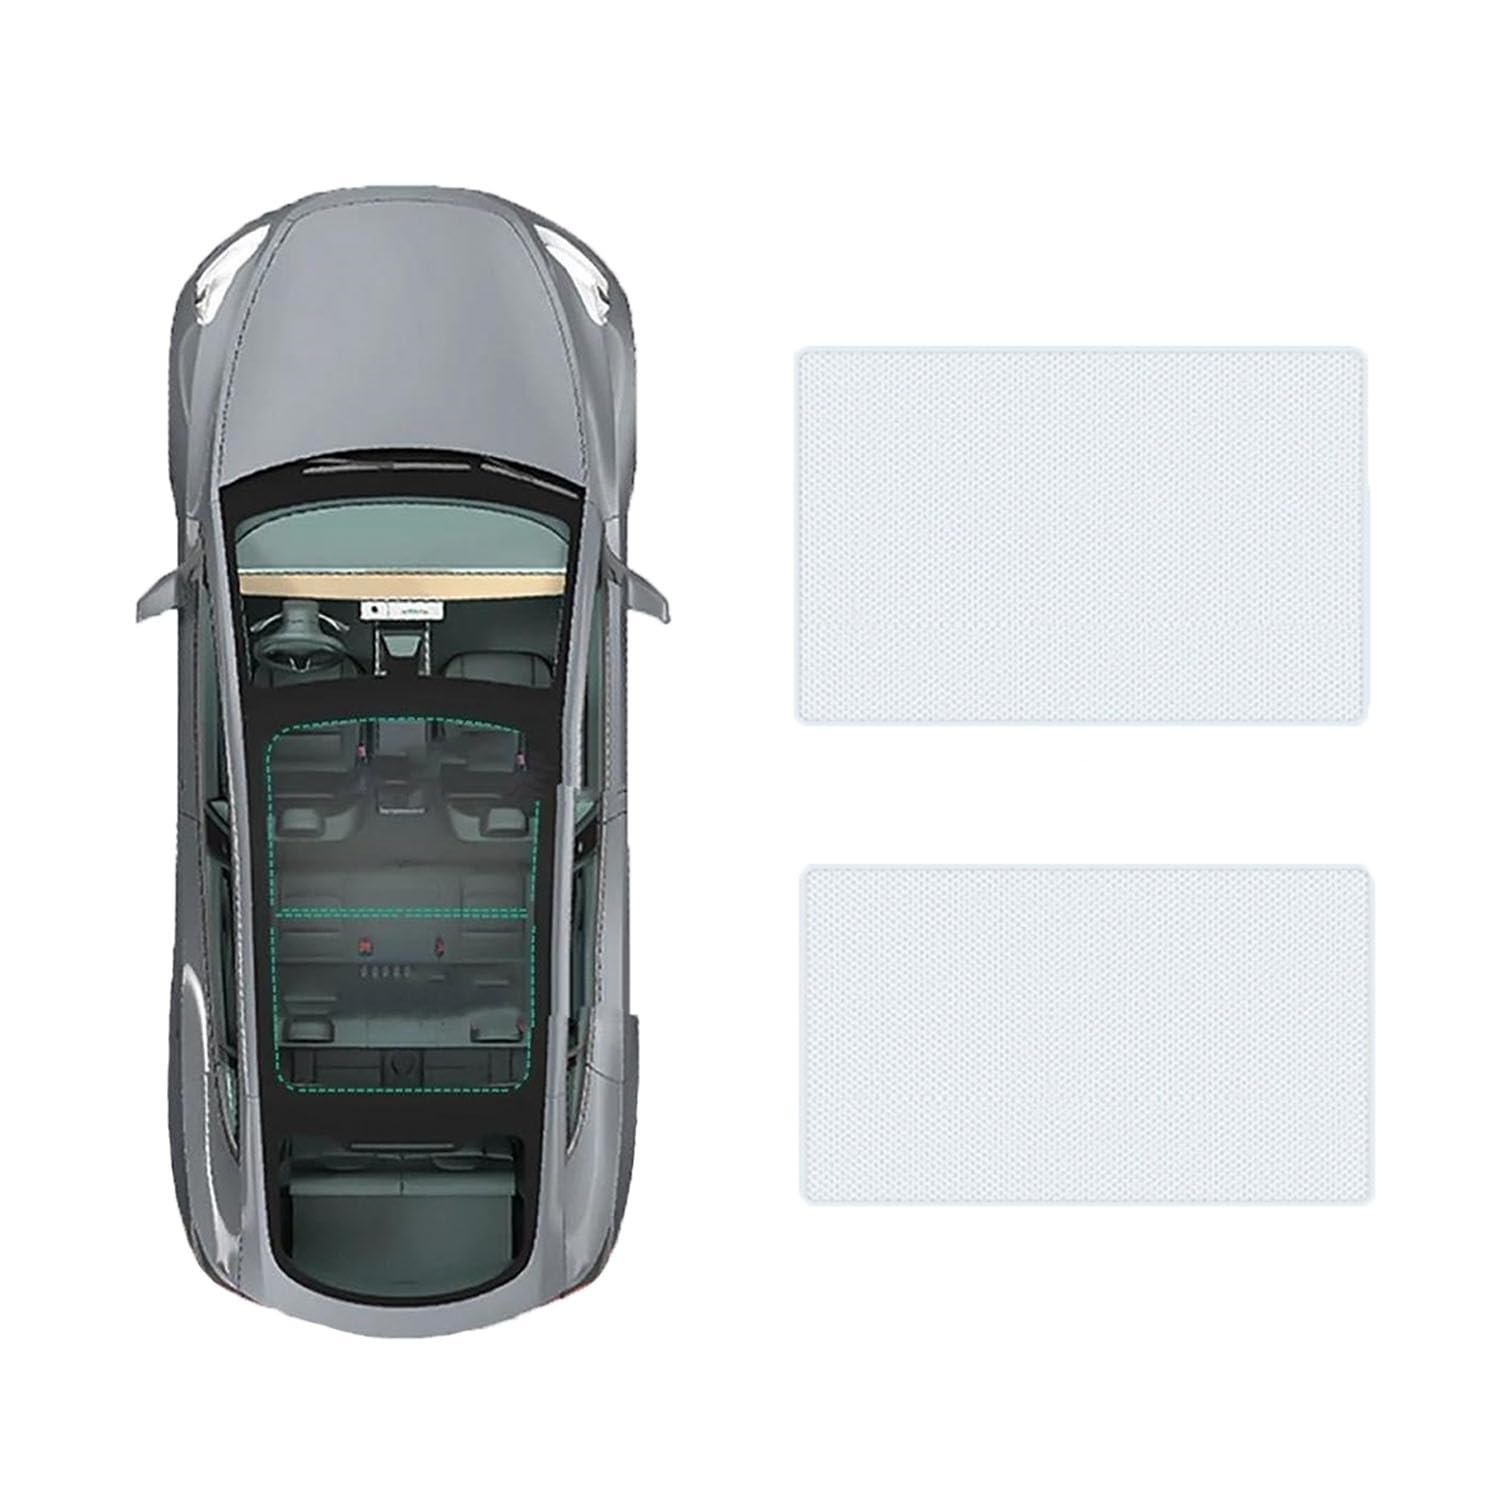 Auto-Schiebedach-Beschattung Für Audi Q3 2013-2018,Auto Schiebedach Sonnenschutz Dach Wärme Isolierung Beschattung Innen Auto Zubehör,A-Gray white regular Style von LLL6zzzK